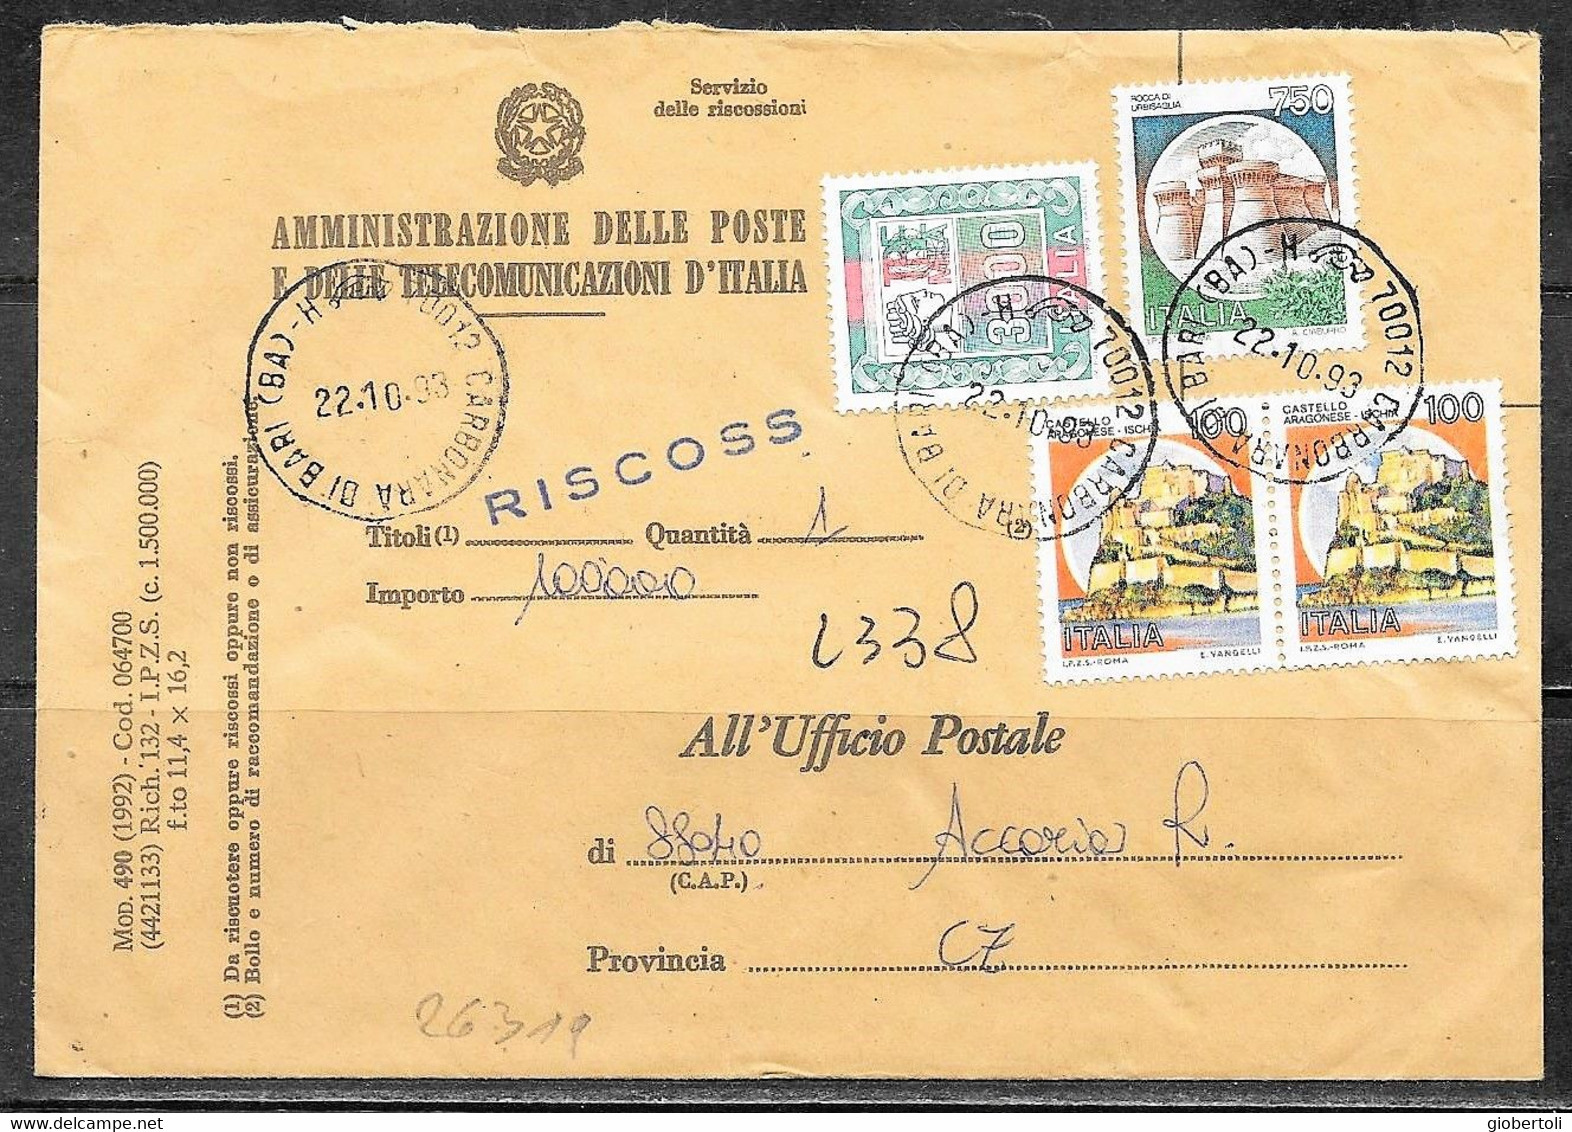 Italia/Italy/Italie: Raccomandata, Registered, Recommandè, Servizio Della Riscossione, Collection Service - 1991-00: Storia Postale